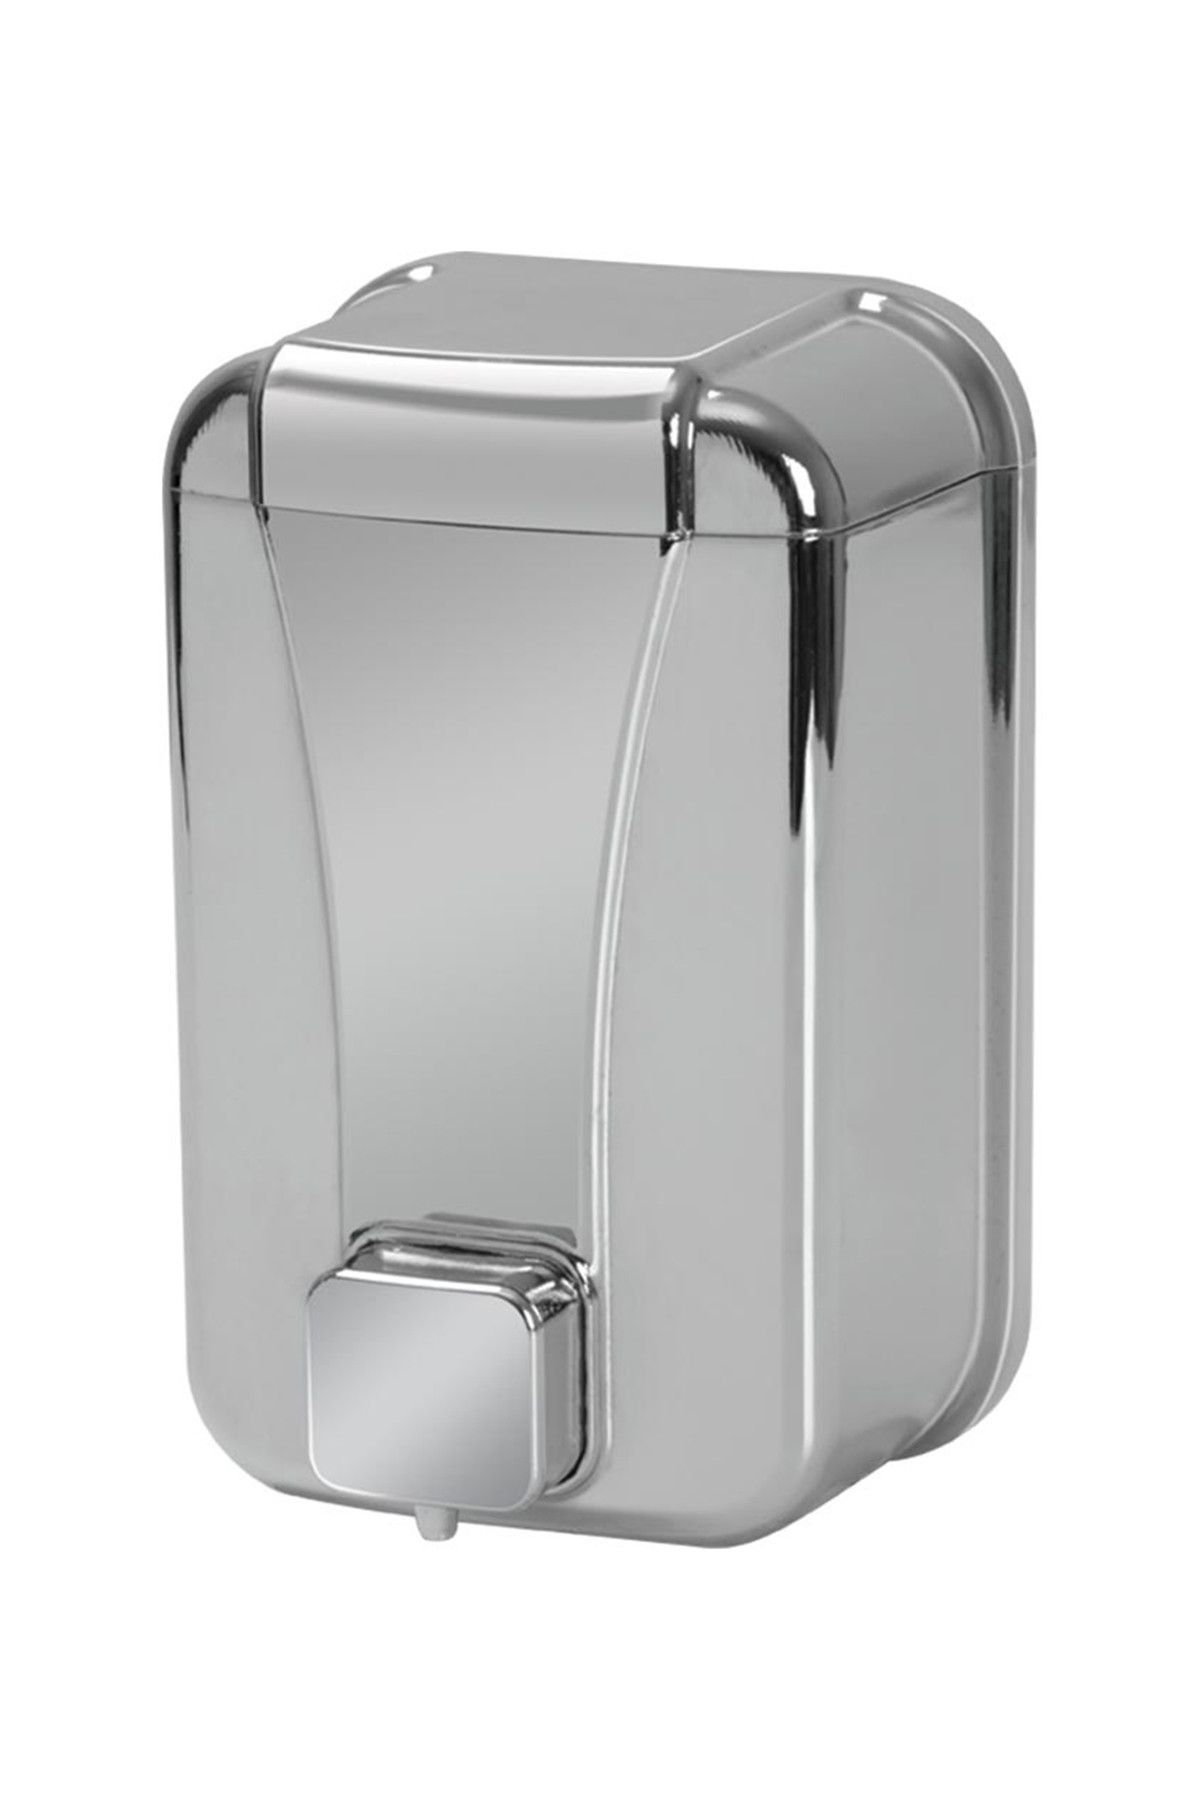 Alper Banyo Sıvı Sabun Dispenseri 500 cc Krom AY523